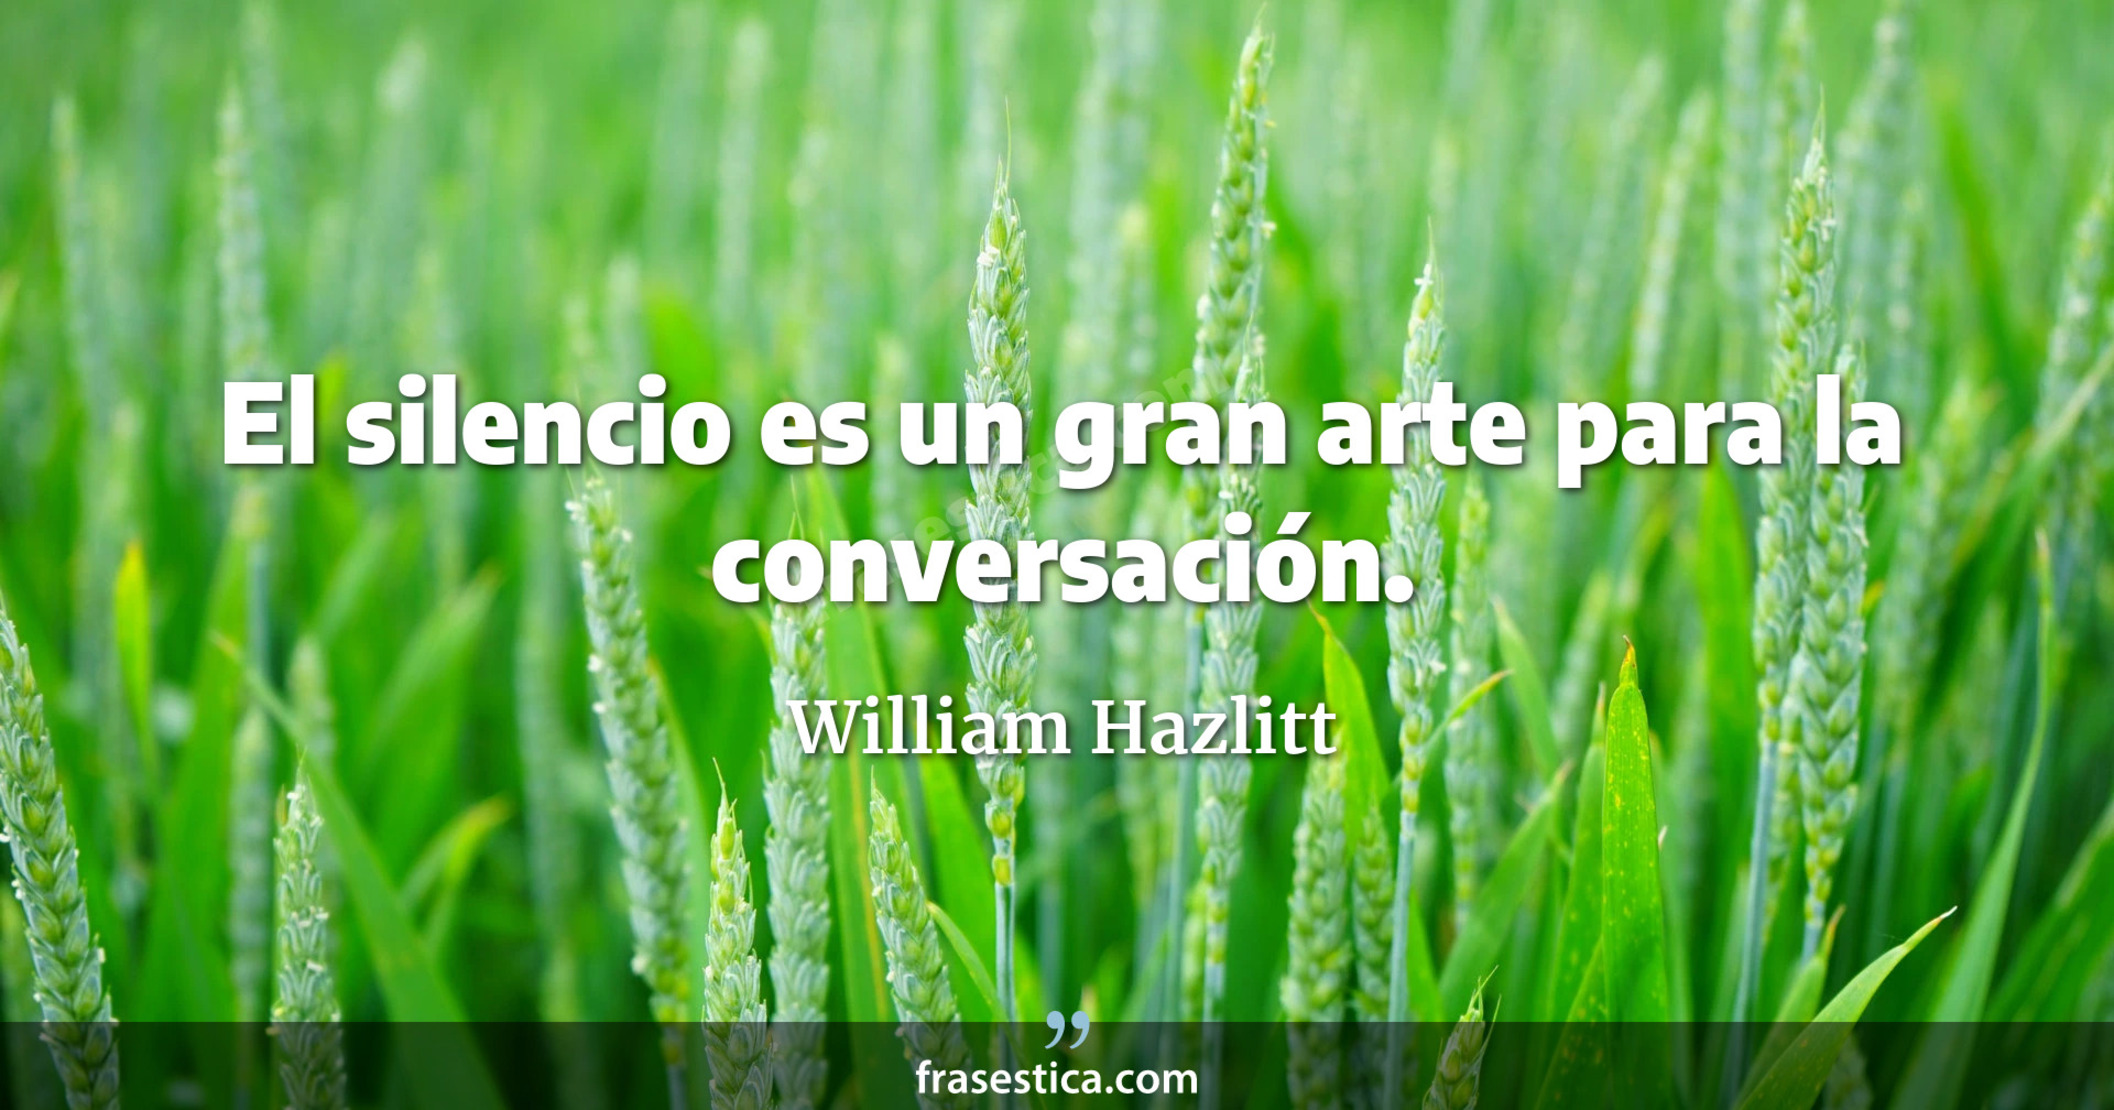 El silencio es un gran arte para la conversación. - William Hazlitt